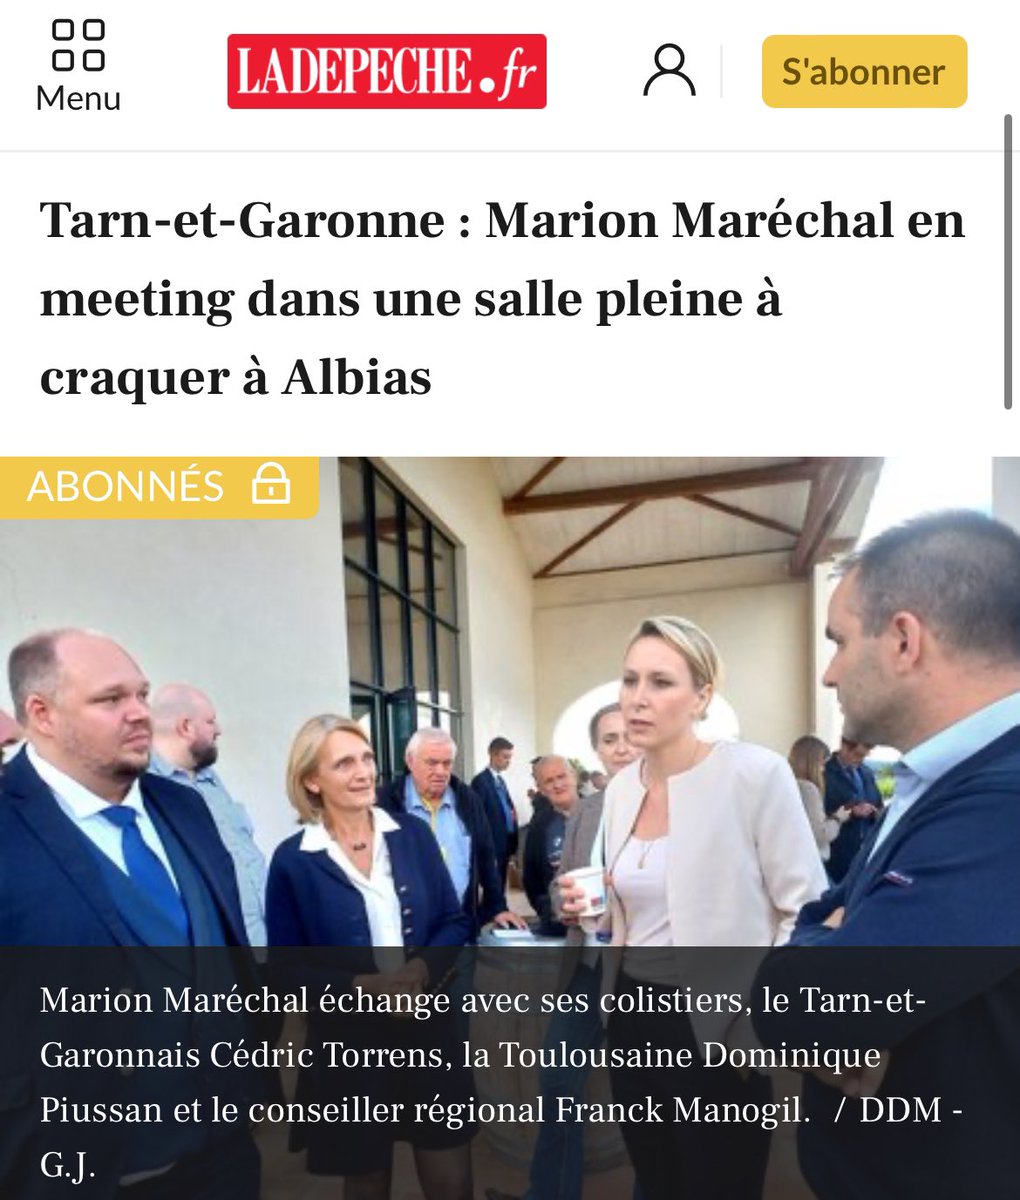 Salle pleine à craquer hier soir pour le meeting de @MarionMarechal dans le Tarn-et-Garonne ! 🔥🇫🇷

#VotezMarion